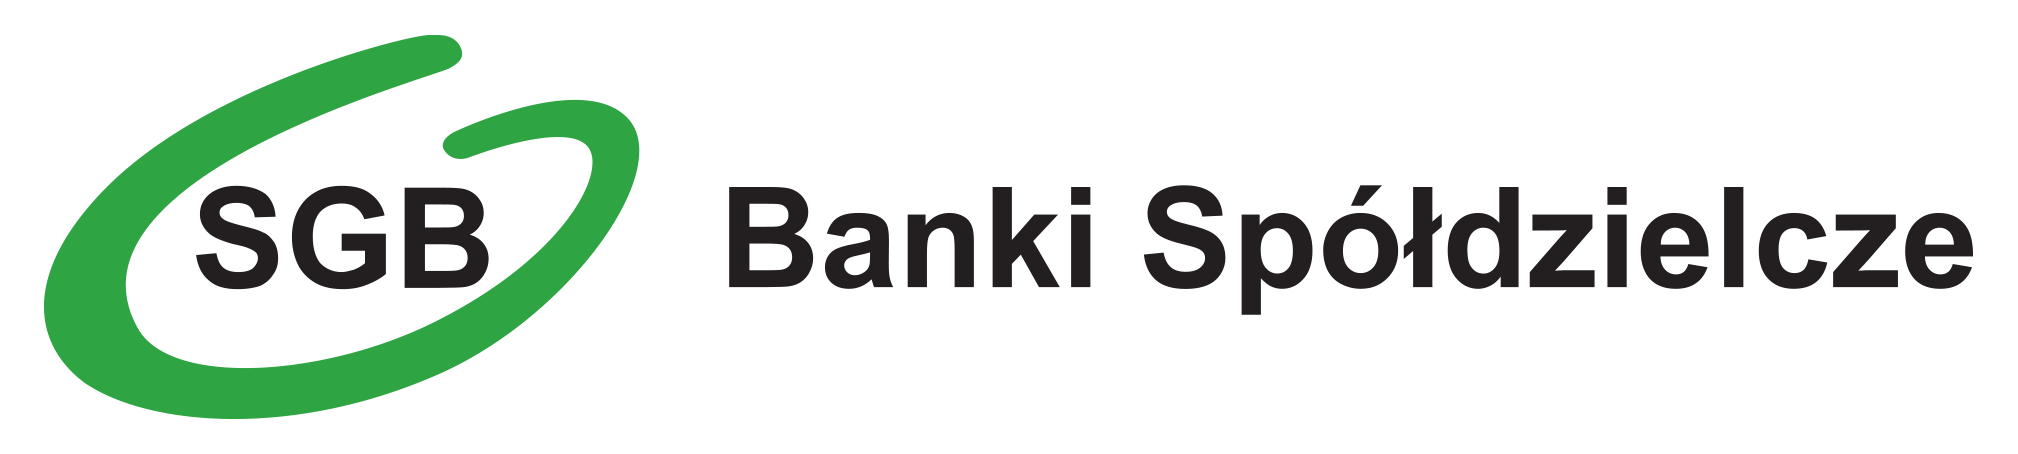 Bankowość elektroniczna eBankNet – 